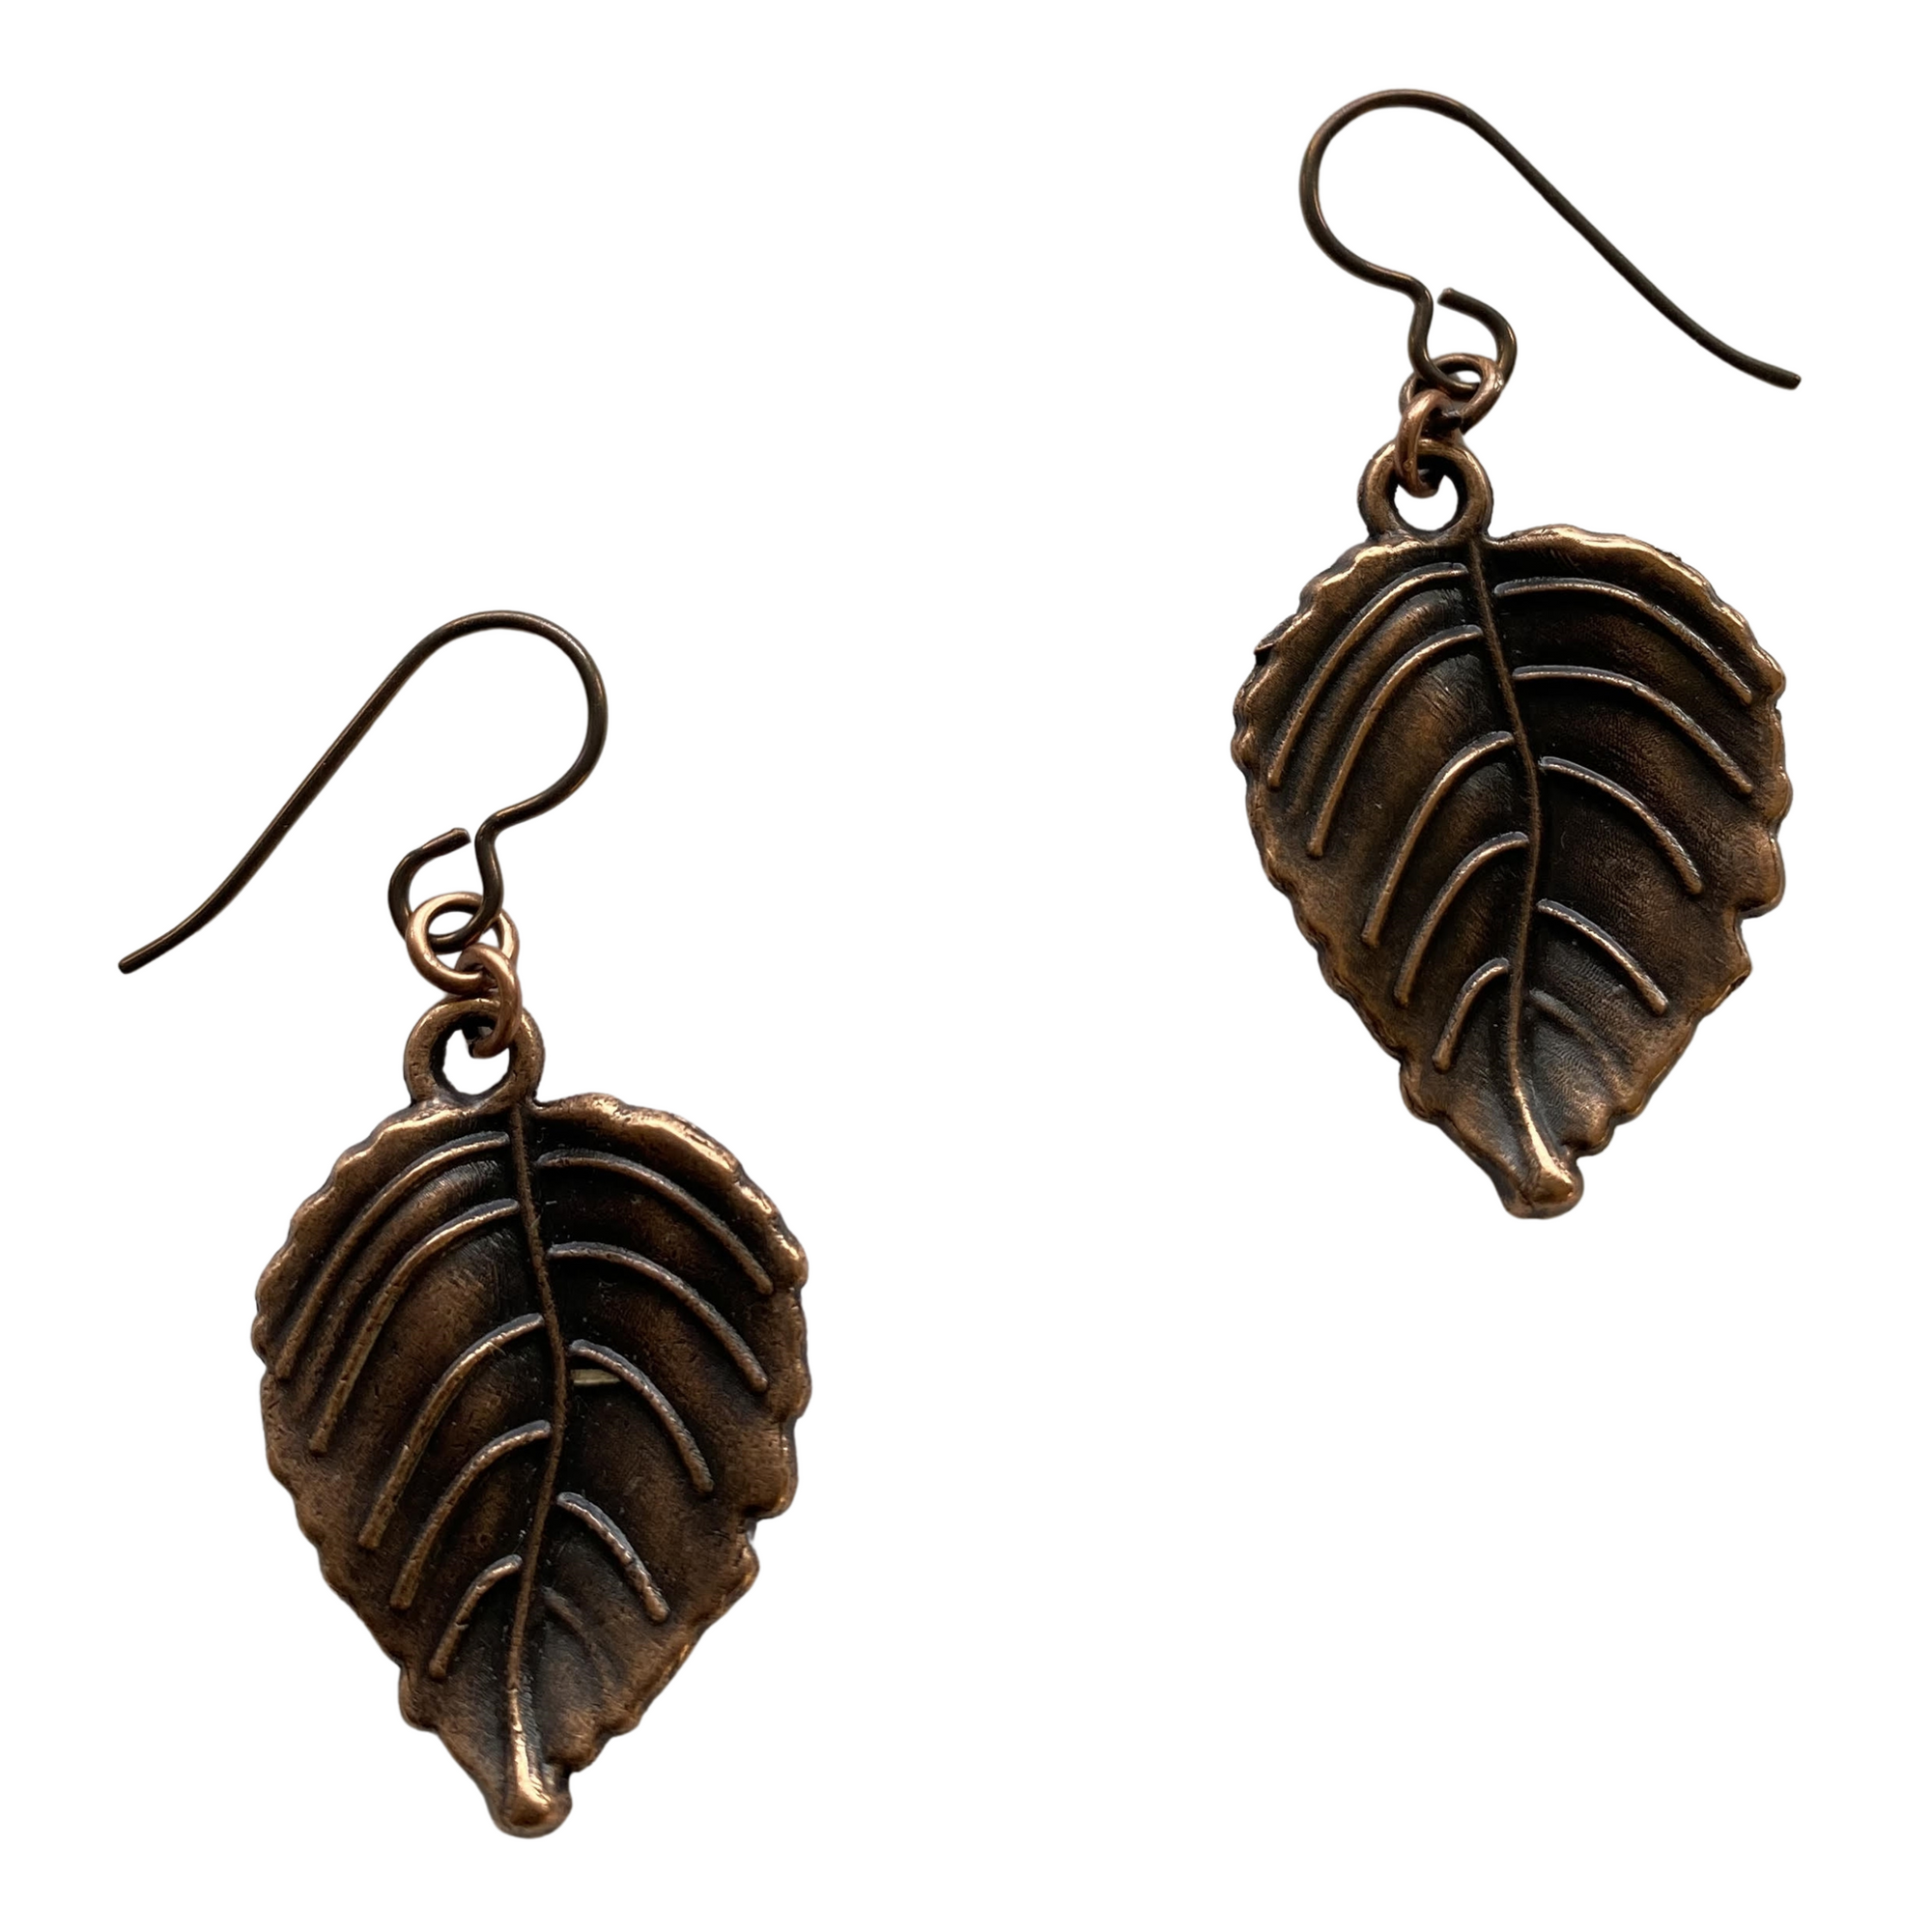 Pear Shape Copper Leaf Earrings for Sensitive Ears